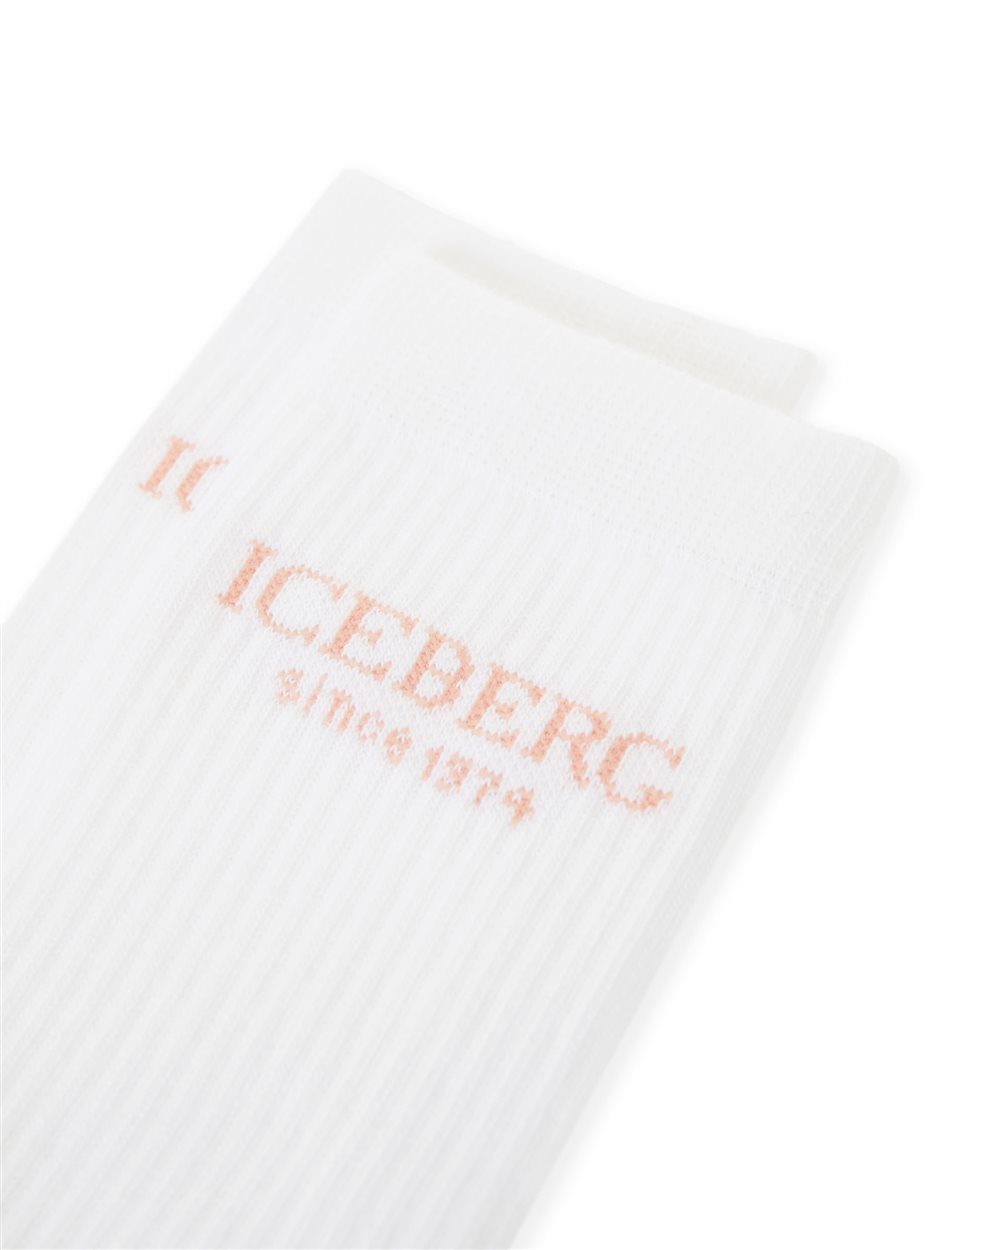 Socks with logo - Iceberg - Official Website